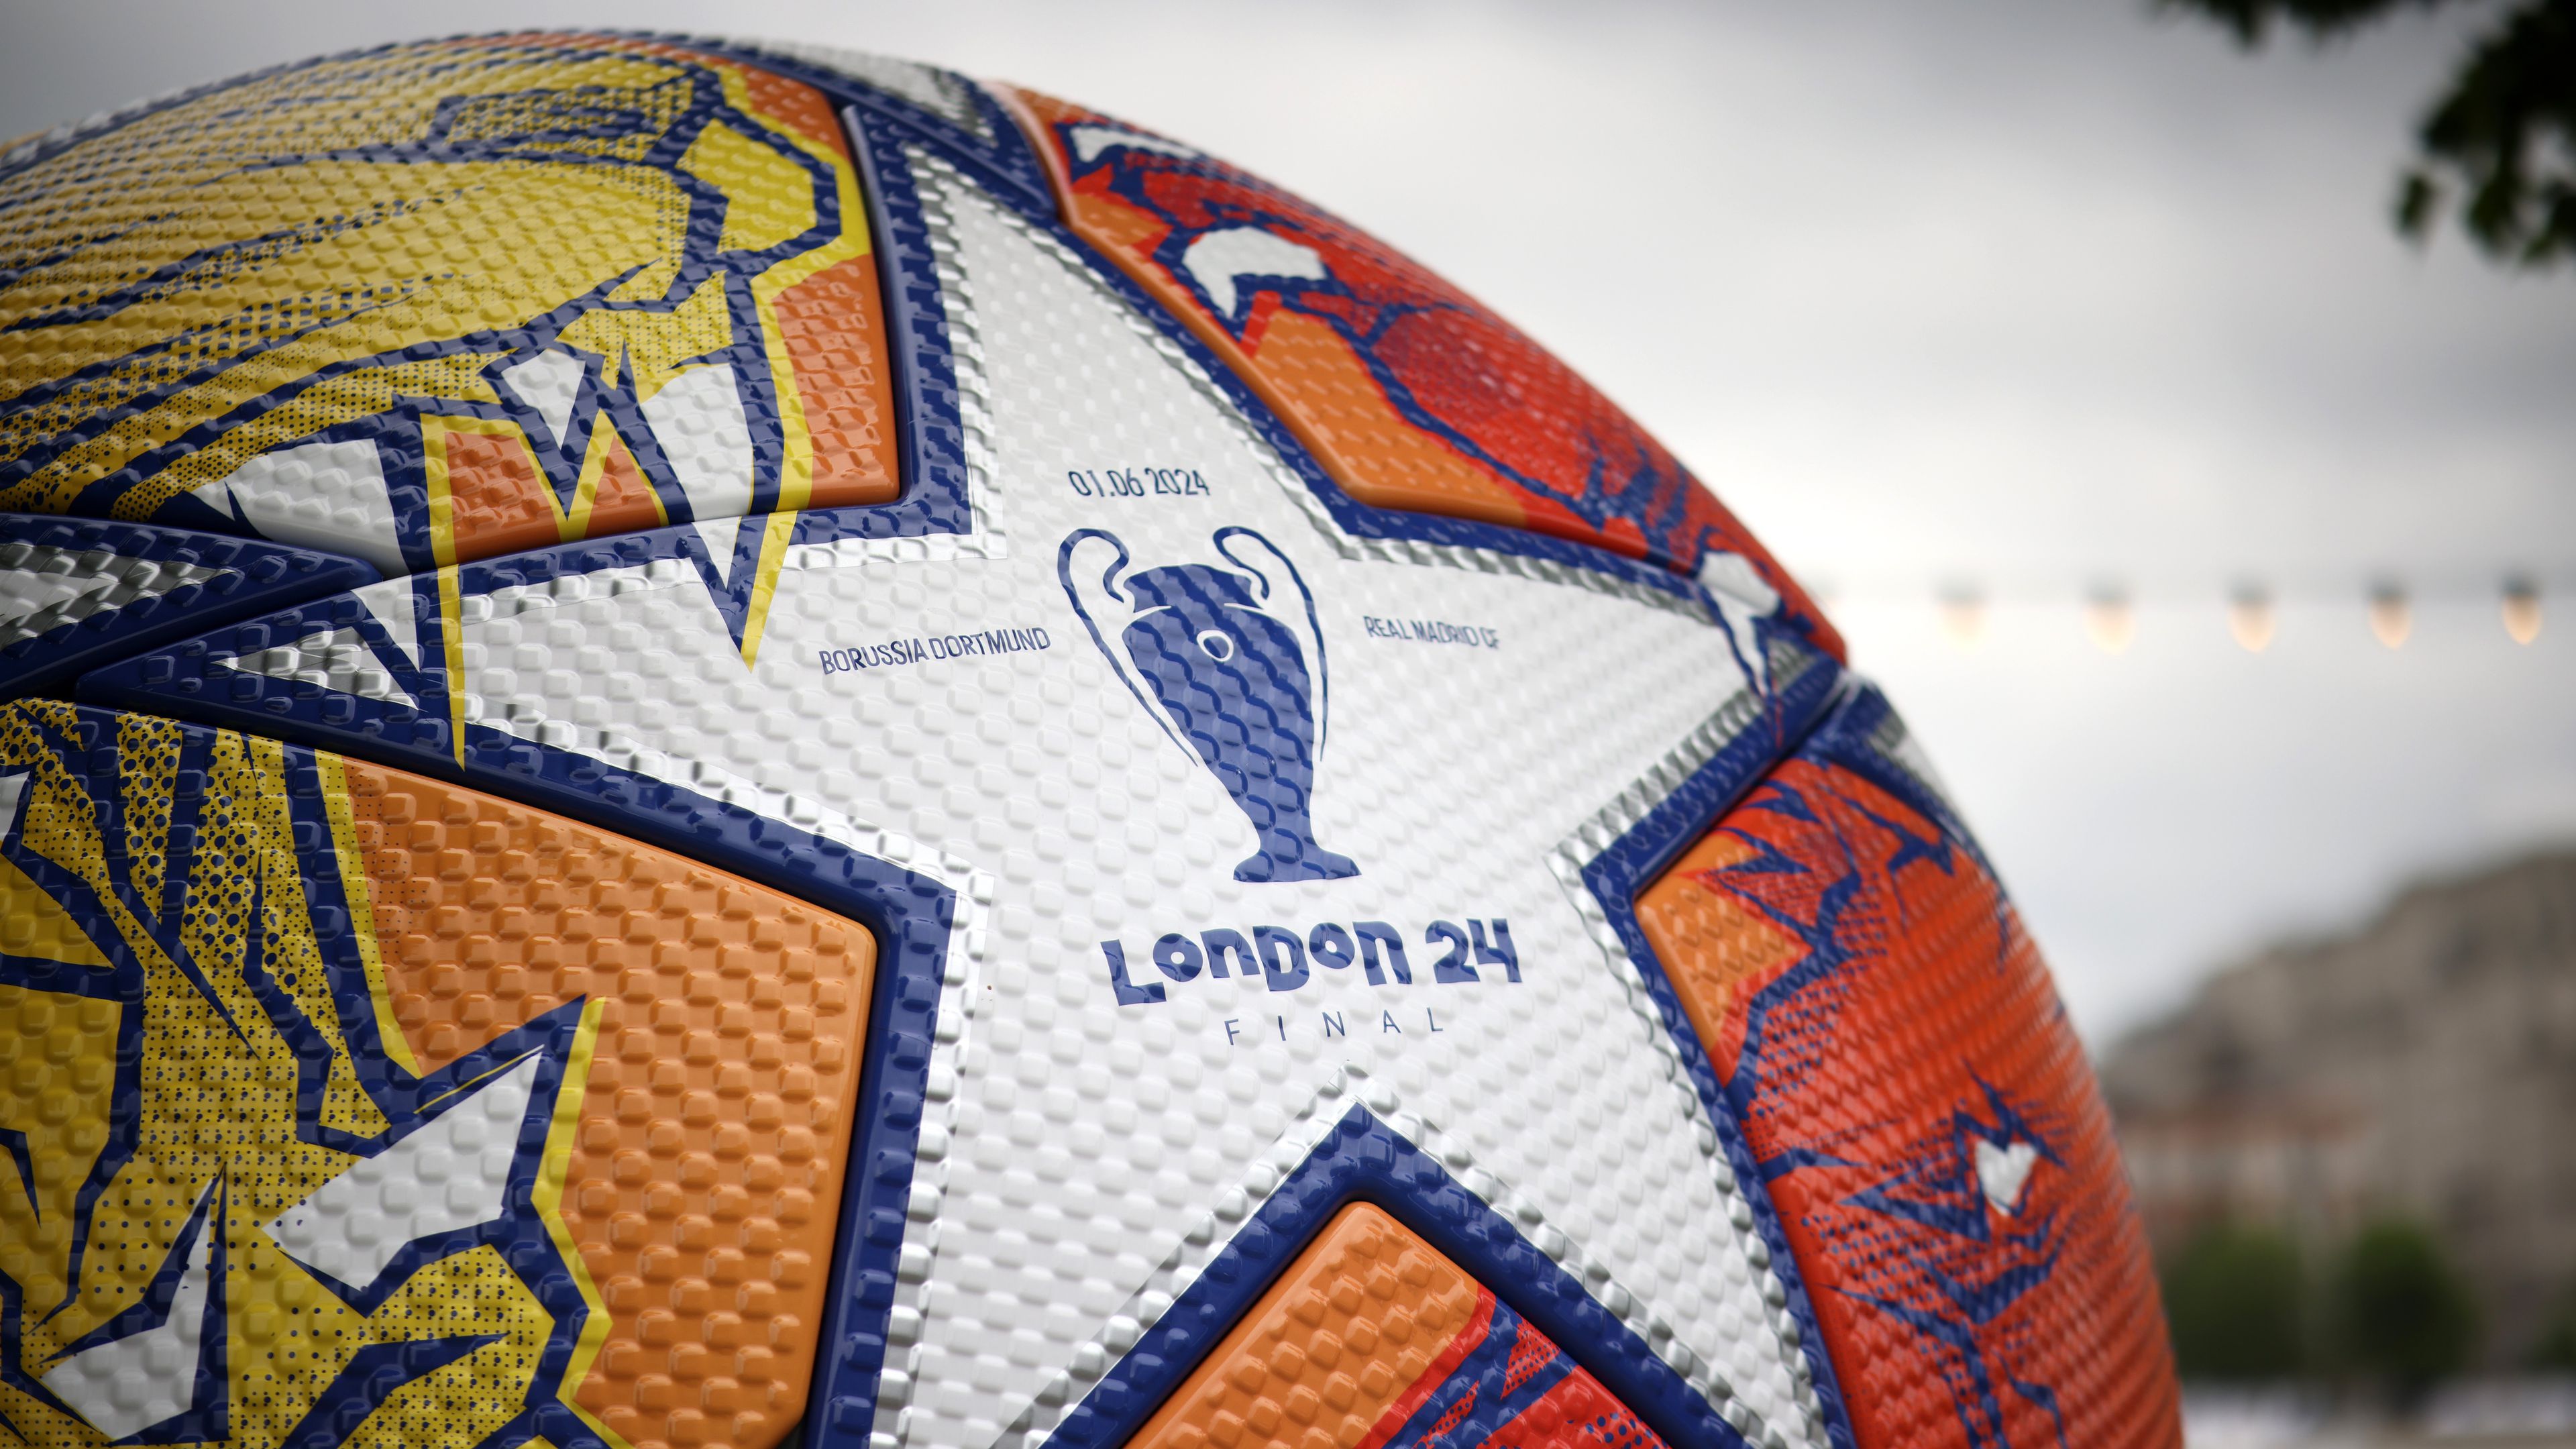 Az idei Bajnokok Ligája-döntő 21 órakor kezdődik Londonban, a Wembleyben. (Fotó: Getty Images)